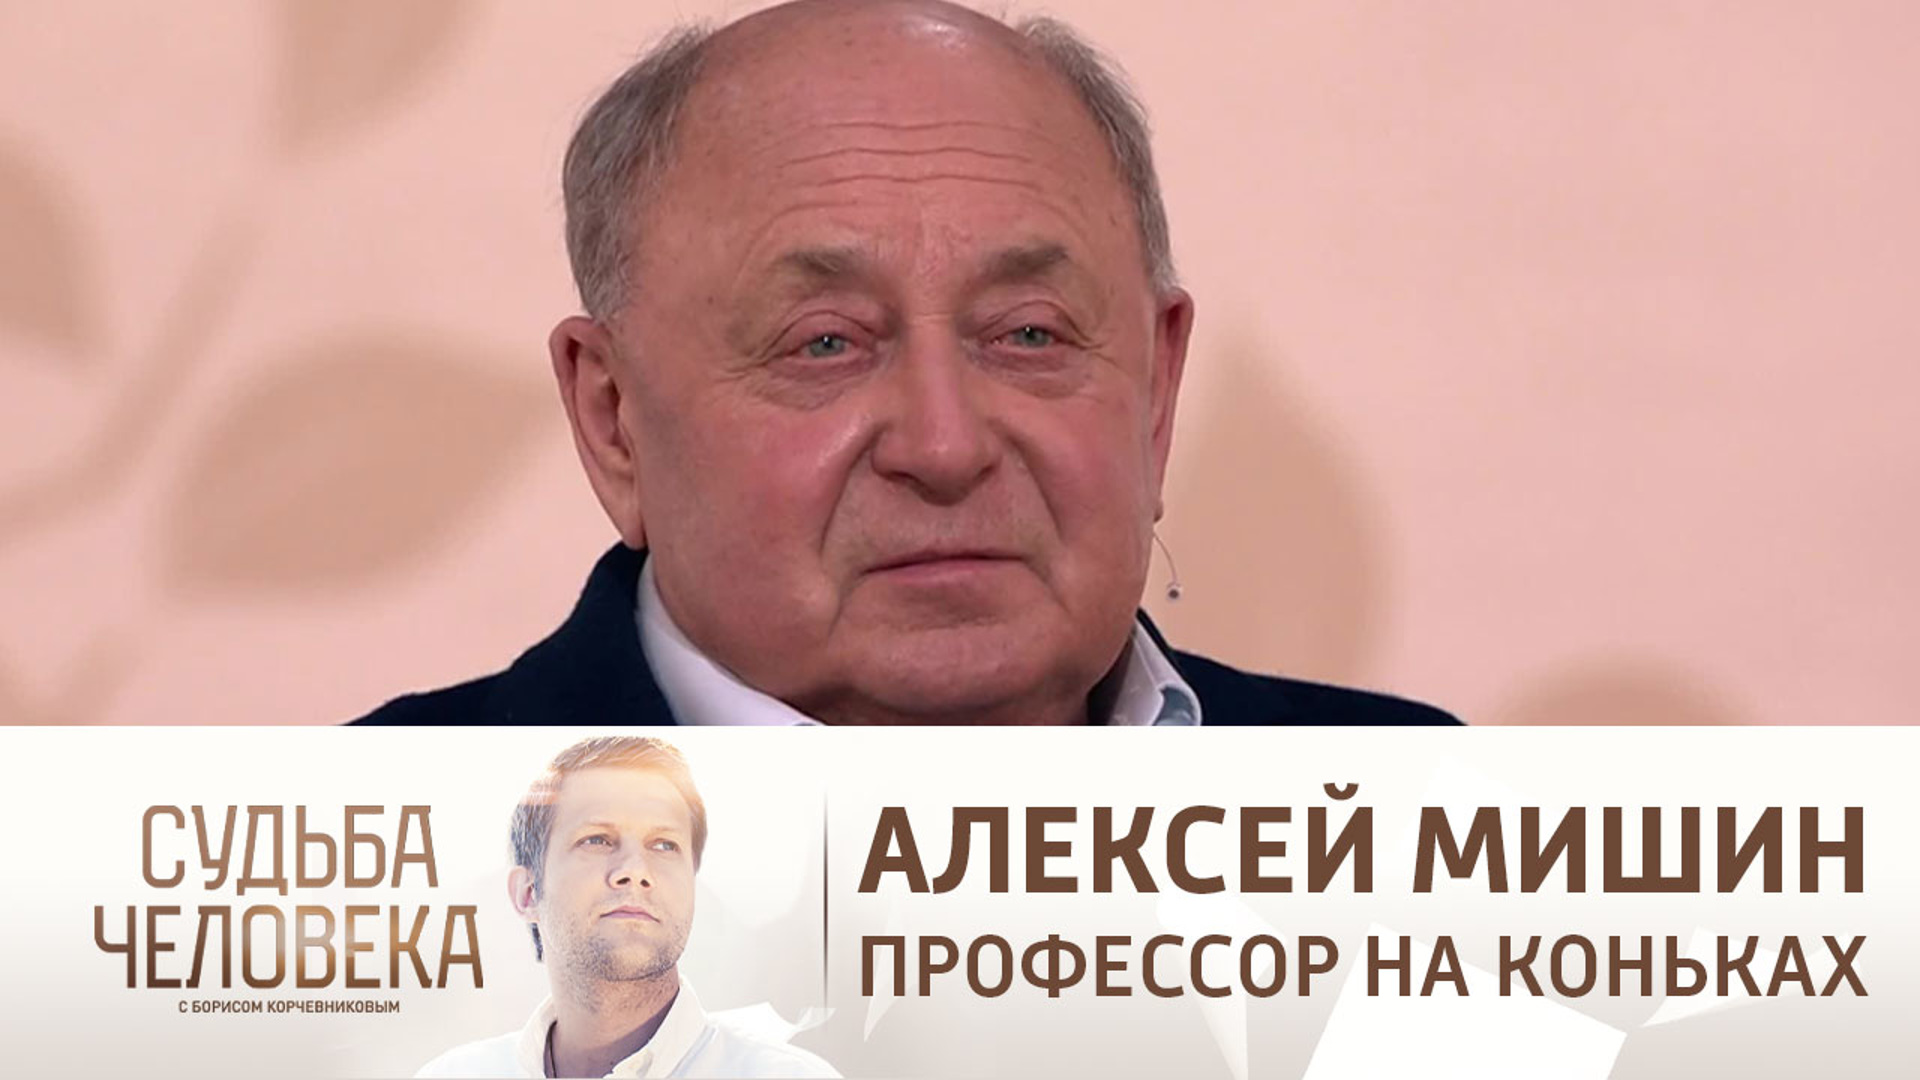 Фабрика чемпионов Алексея Мишина документальный фильм